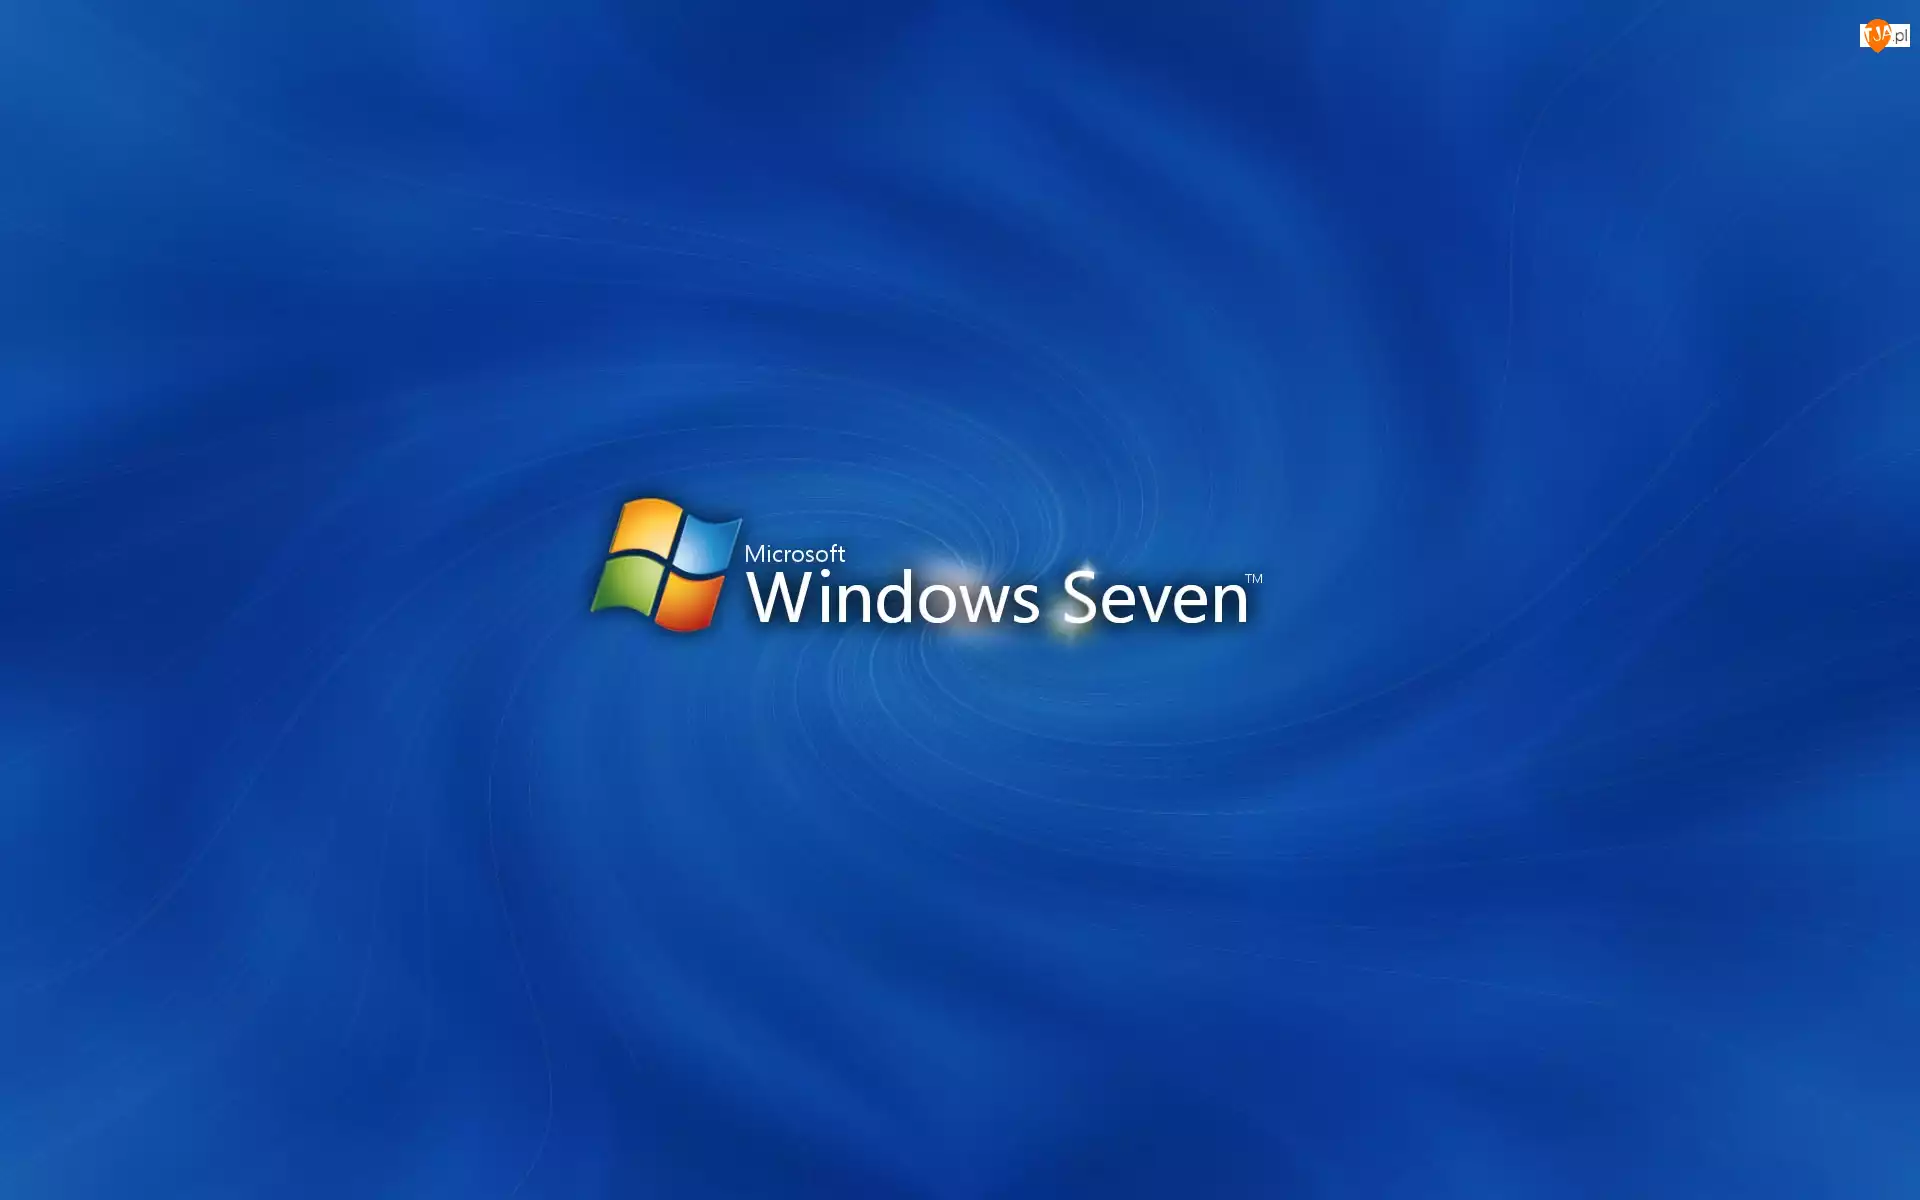 Wir, Windows, Seven